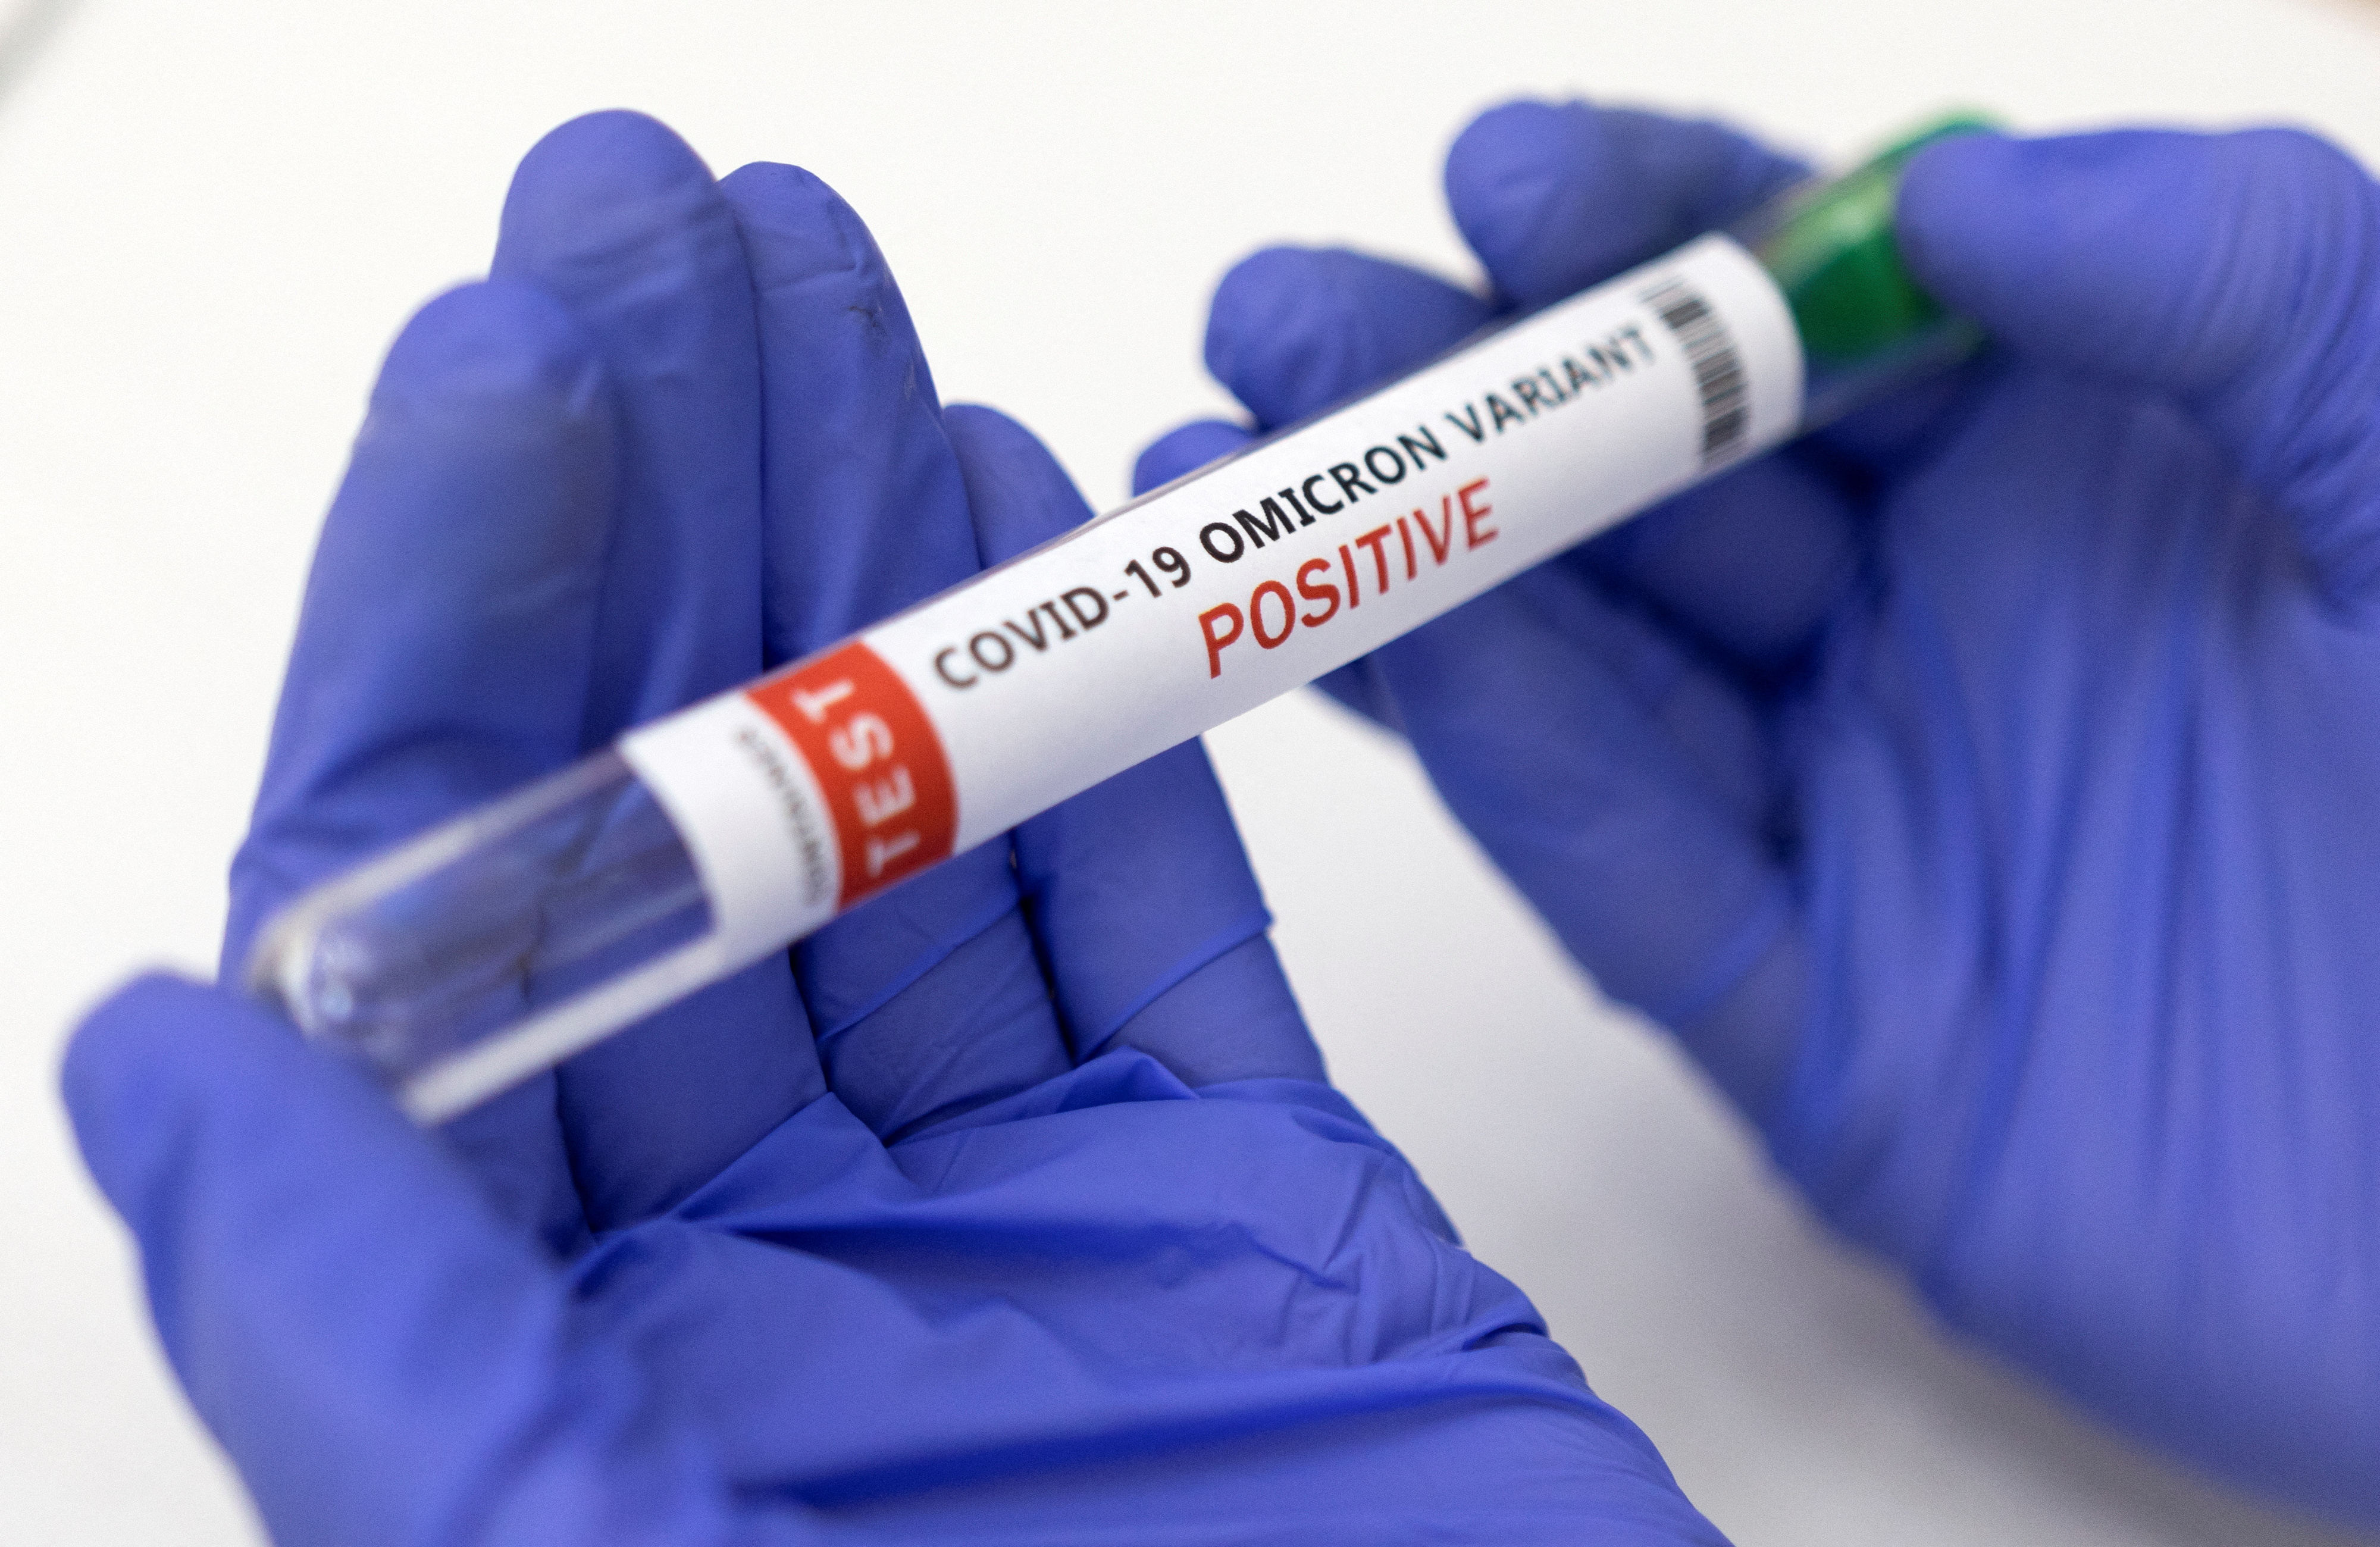 La aparición de nuevas variantes del virus SARS-CoV-2 representa una gran amenaza para el progreso de los esfuerzos de vacunación en curso contra el COVID-19 en todo el mundo (REUTERS/Dado Ruvic/Illustration)